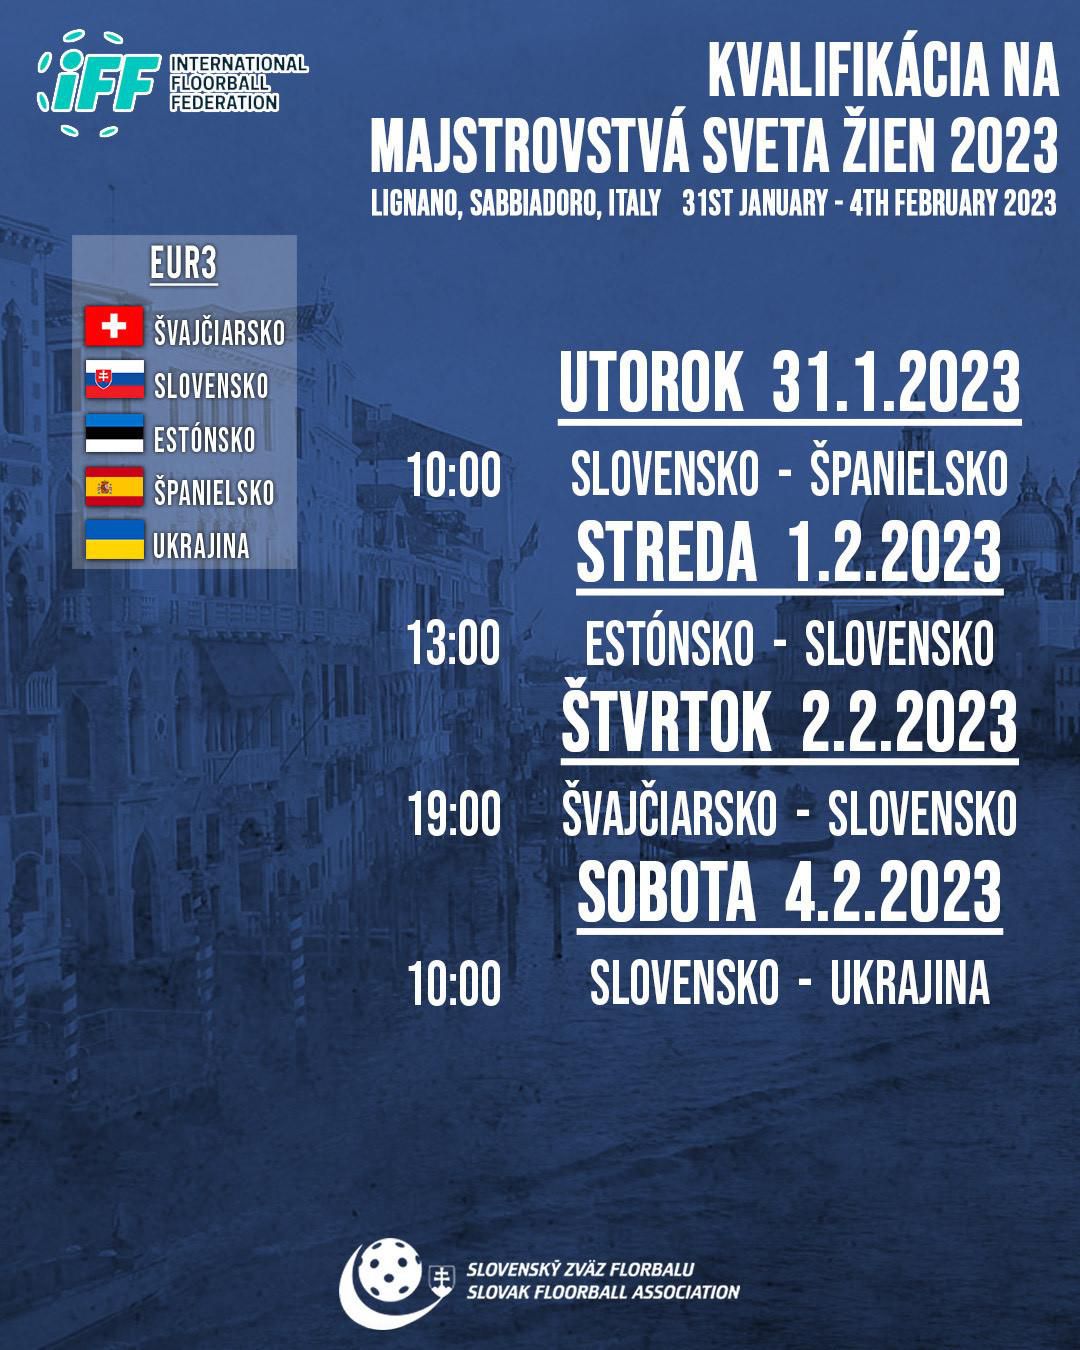 Slovenky sa na kvalifikačnom turnaji stretnú so Španielkami, Estónkami, Švajčiarkami a Ukrajinkami.